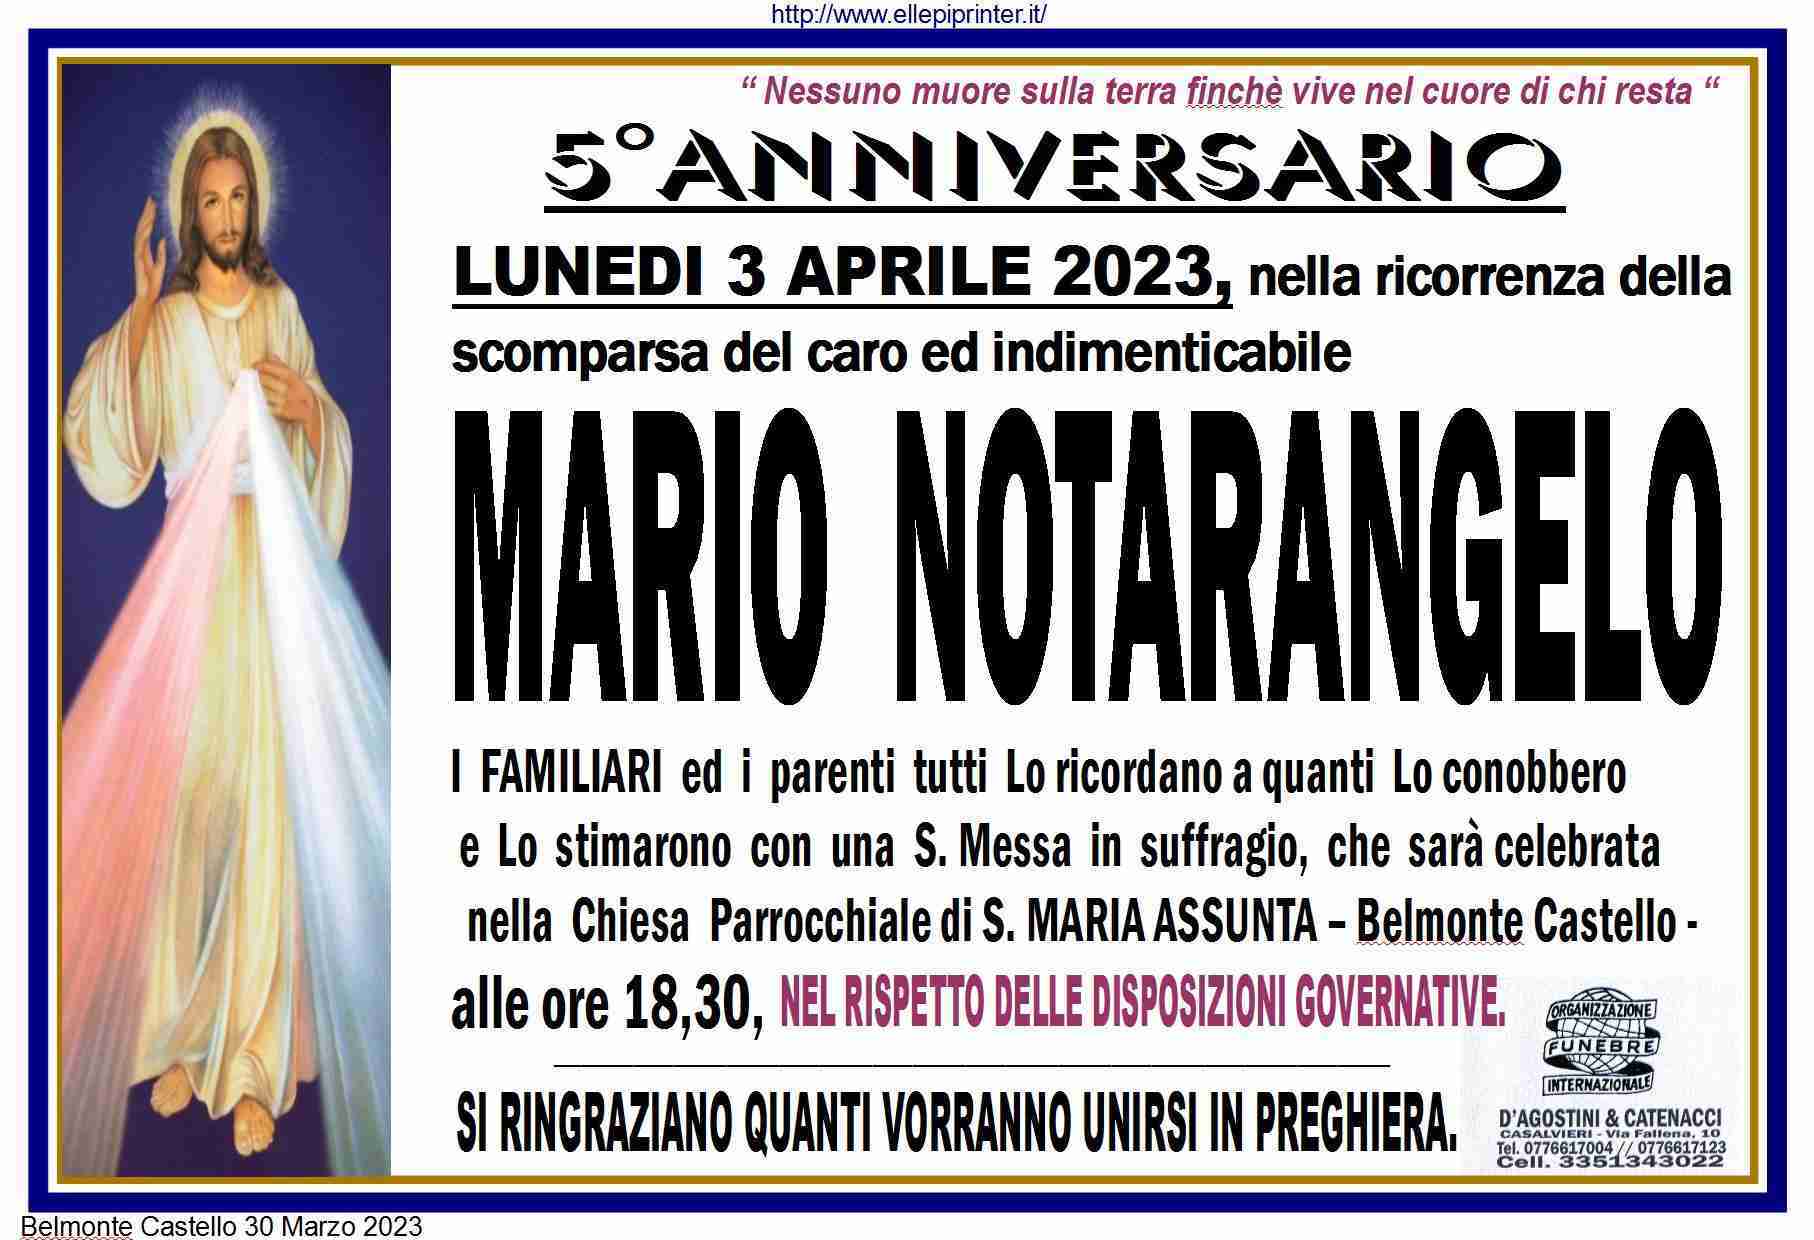 Mario Notarangelo